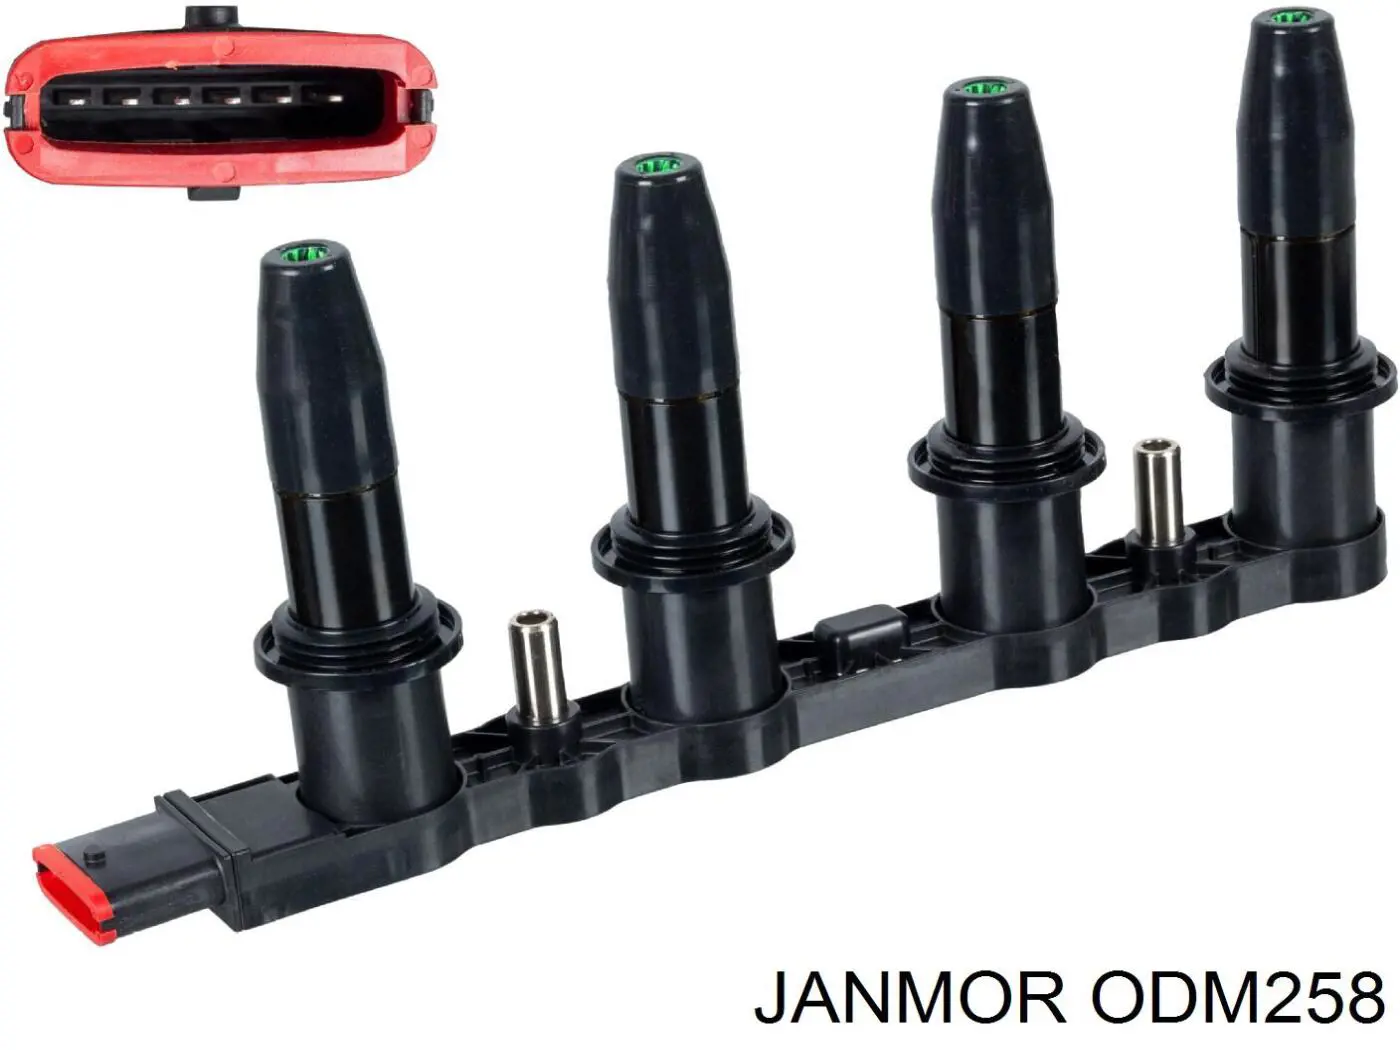 ODM258 Janmor bobina